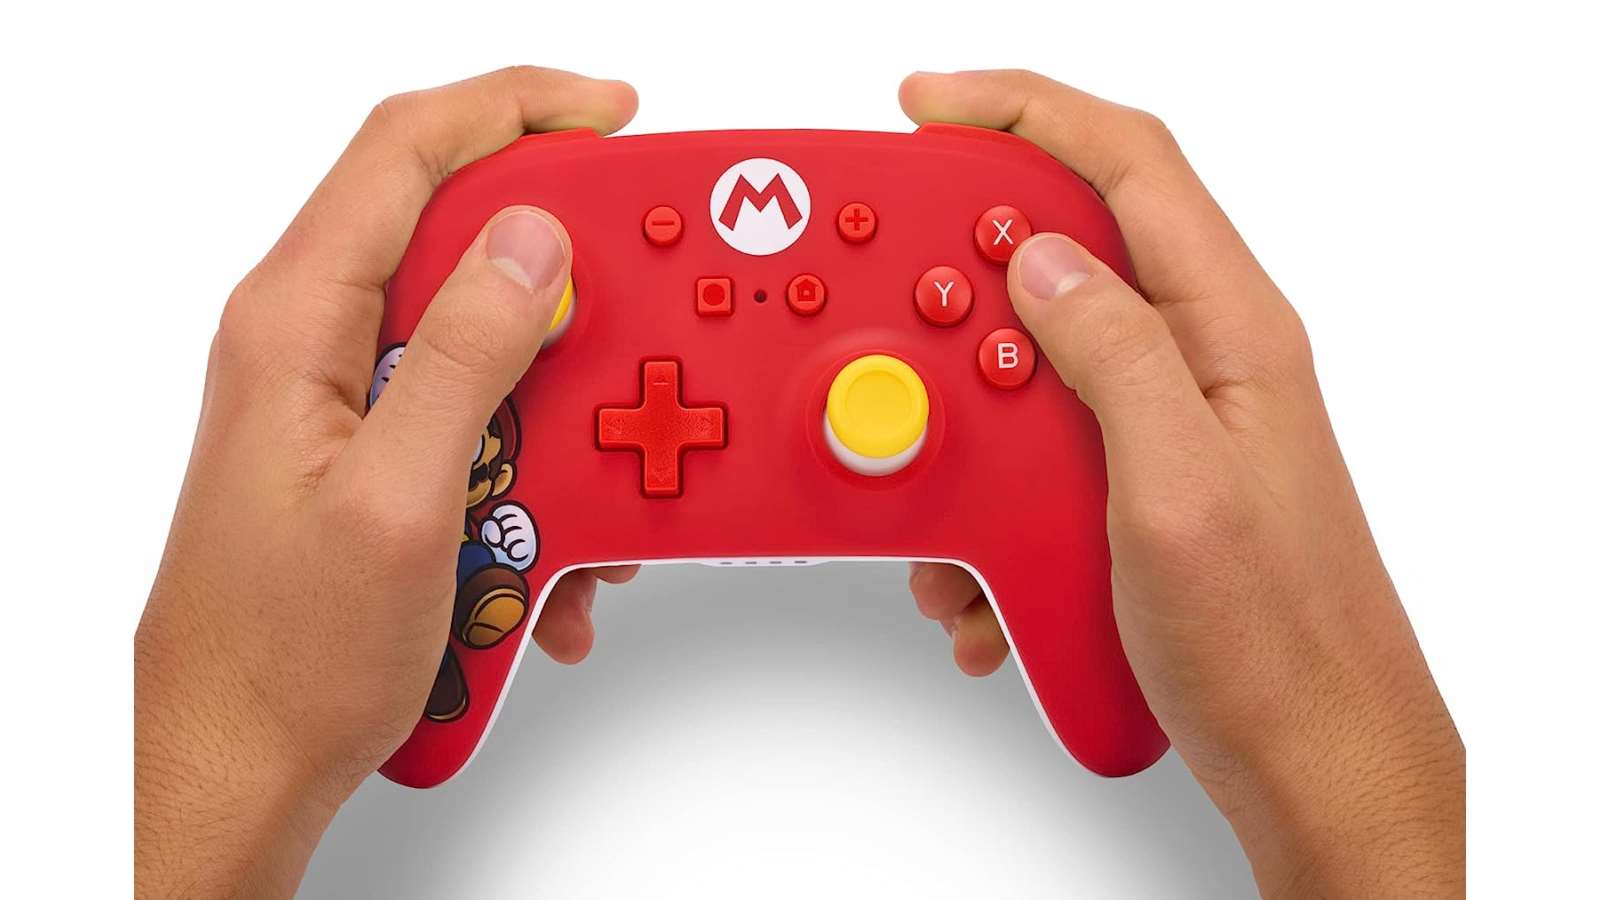 בקר אלחוטי Nintendo Switch Controller Mario - צבע אדום שנה אחריות ע"י היבואן הרשמי